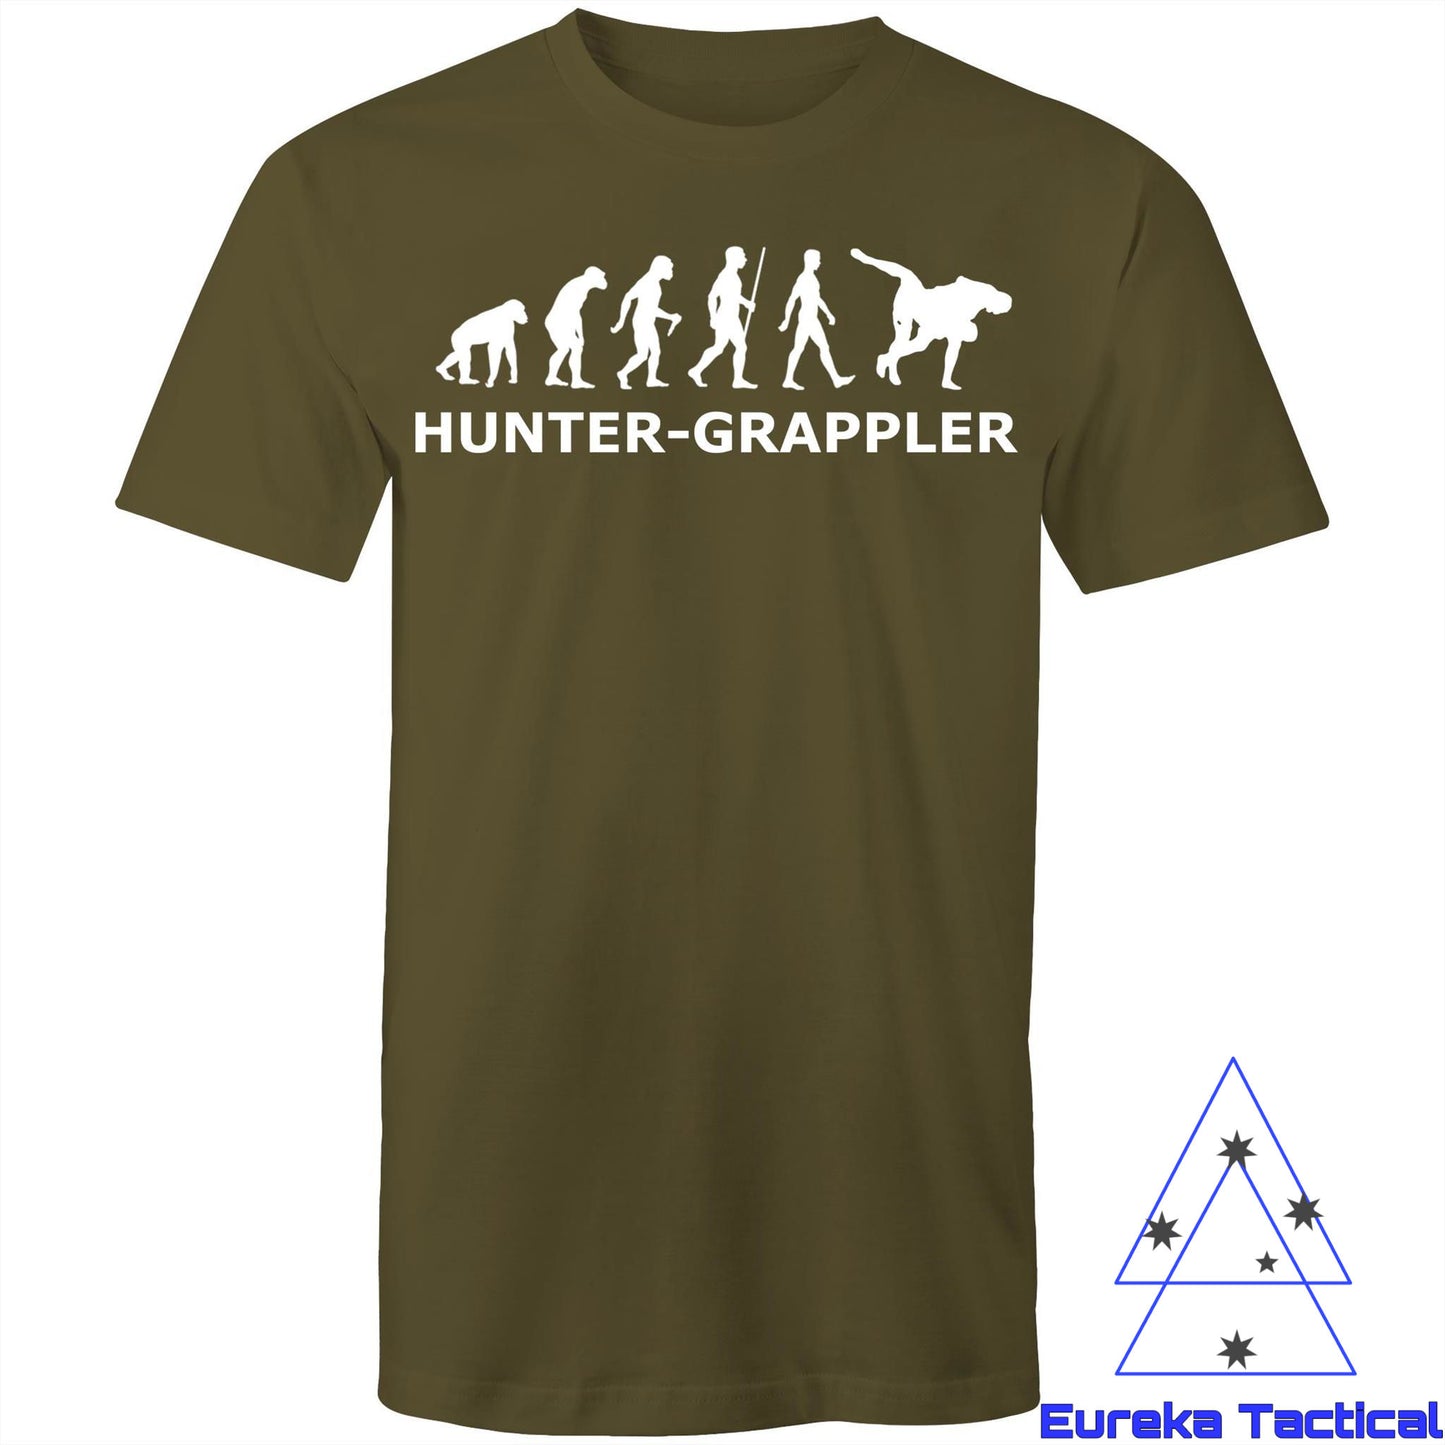 Hunter-Grappler. Men's AS Colour 100% cotton t-shirt. Regular cut.